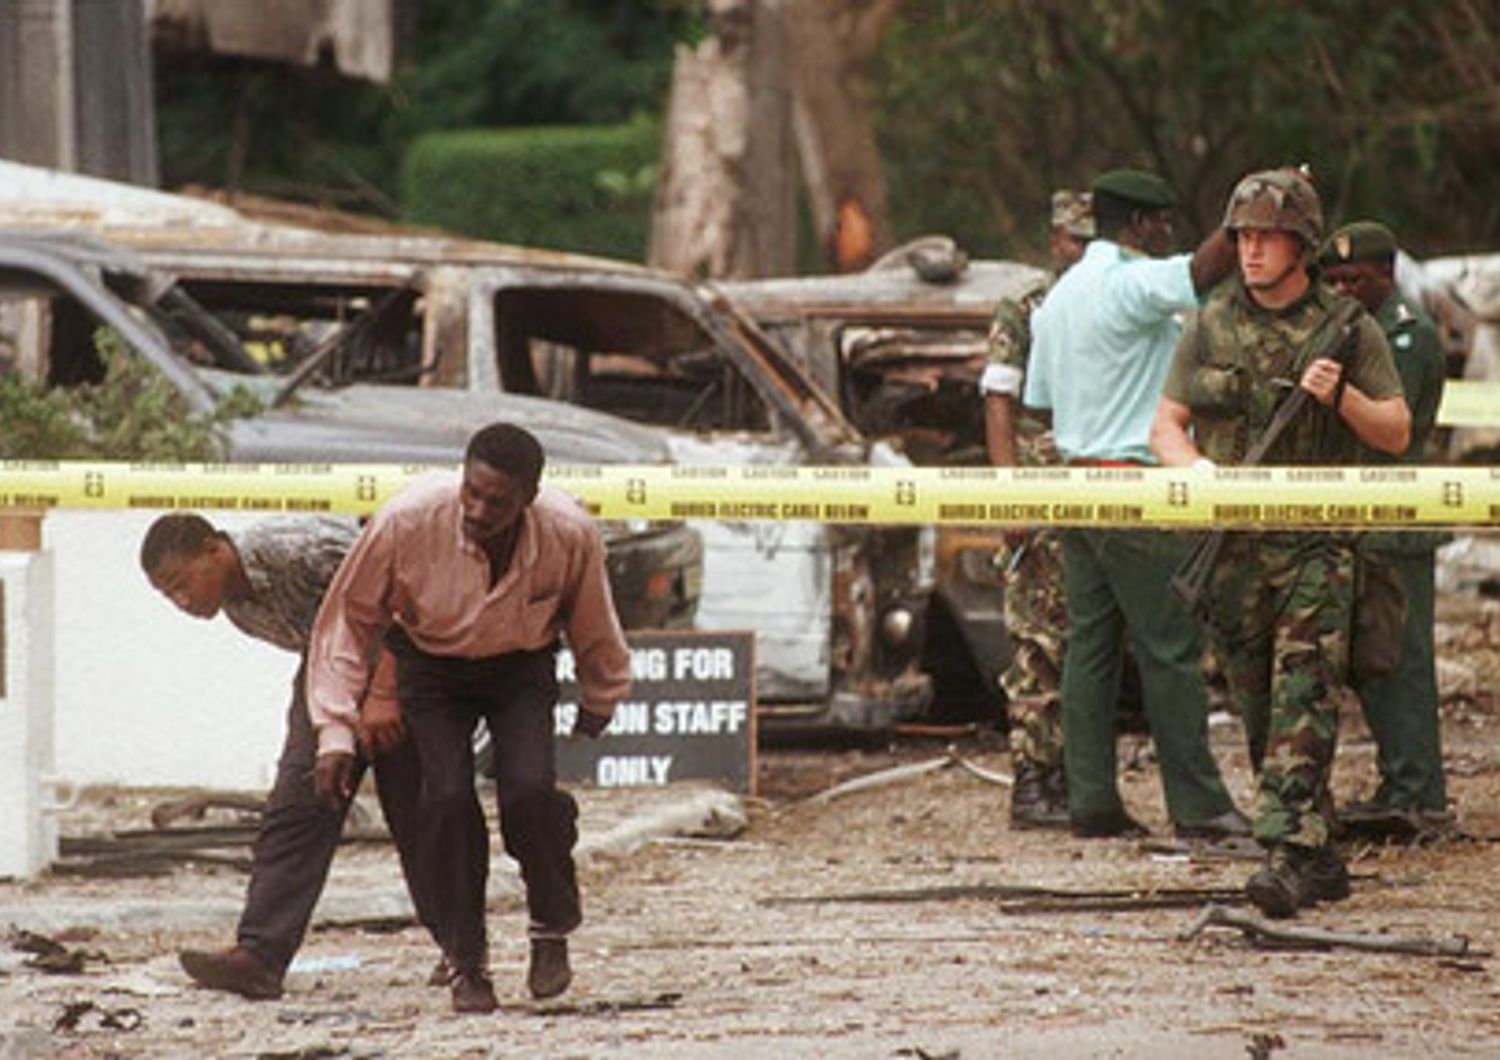 L'attentato dell'agosto 1998 all'ambasciata americana a Dar es Salaam in Tanzania. Nello stesso giorno fu colpita anche l'ambasciata in Kenya